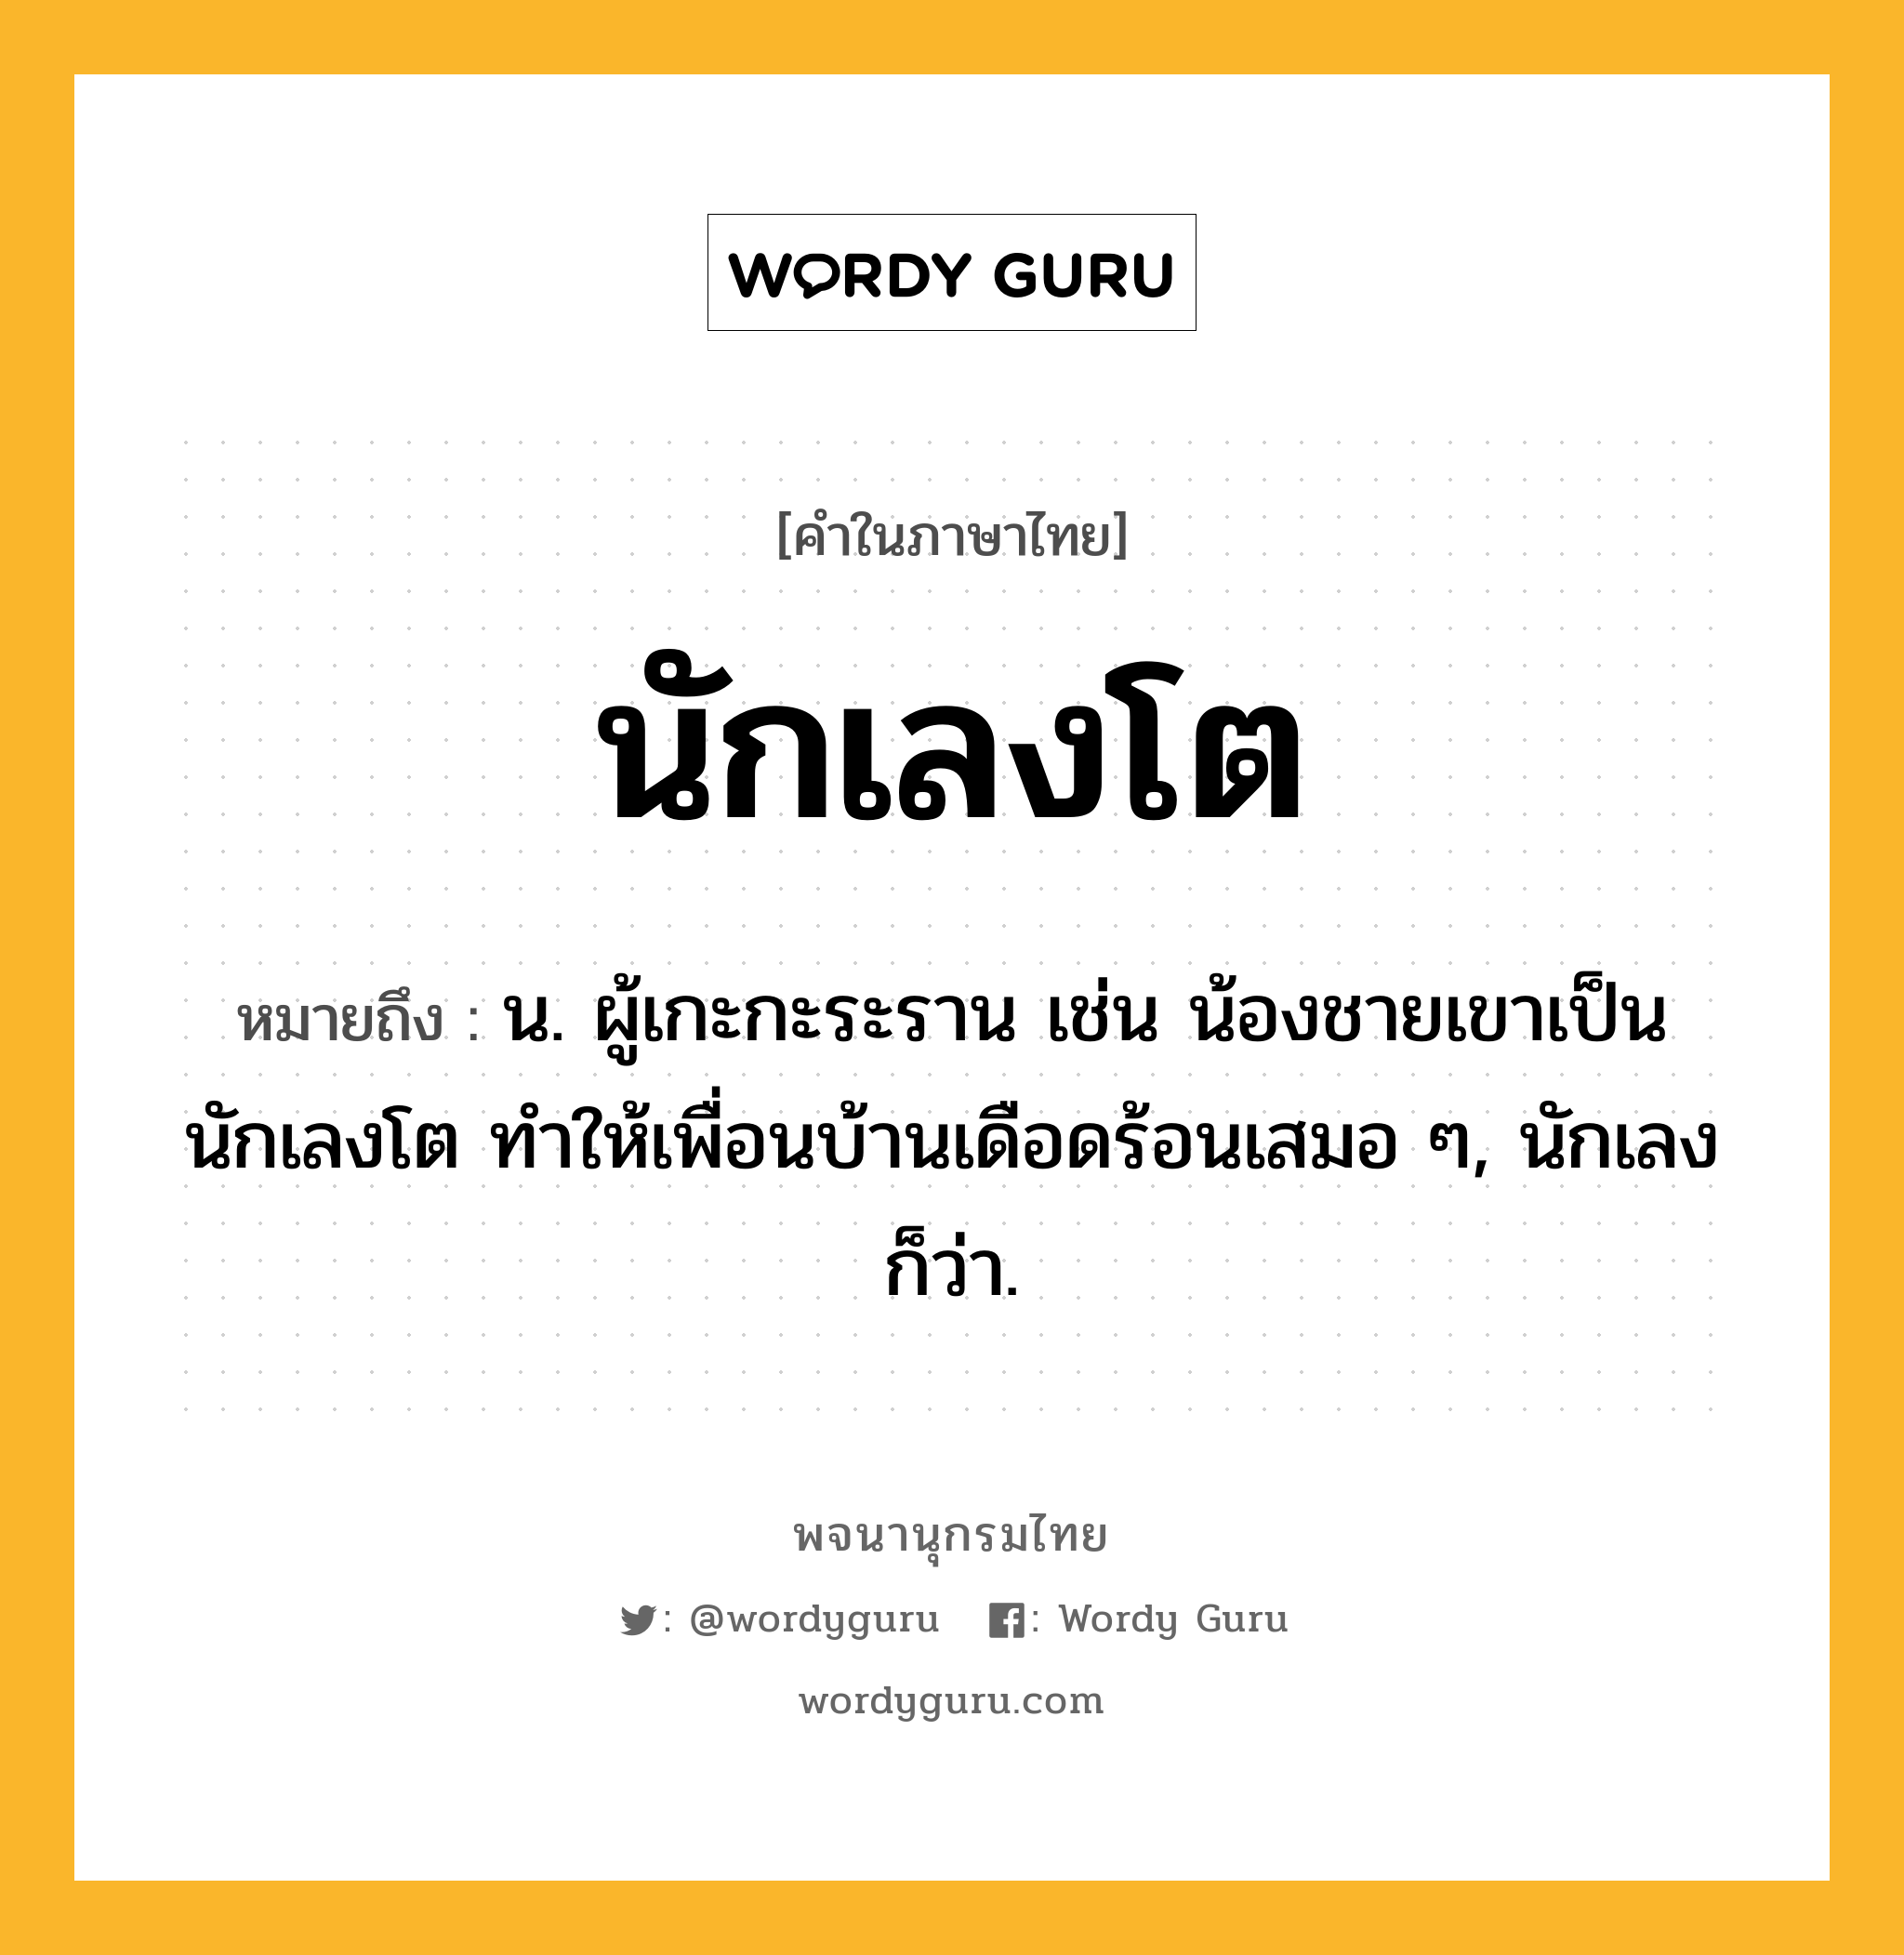 นักเลงโต หมายถึงอะไร?, คำในภาษาไทย นักเลงโต หมายถึง น. ผู้เกะกะระราน เช่น น้องชายเขาเป็นนักเลงโต ทำให้เพื่อนบ้านเดือดร้อนเสมอ ๆ, นักเลง ก็ว่า.